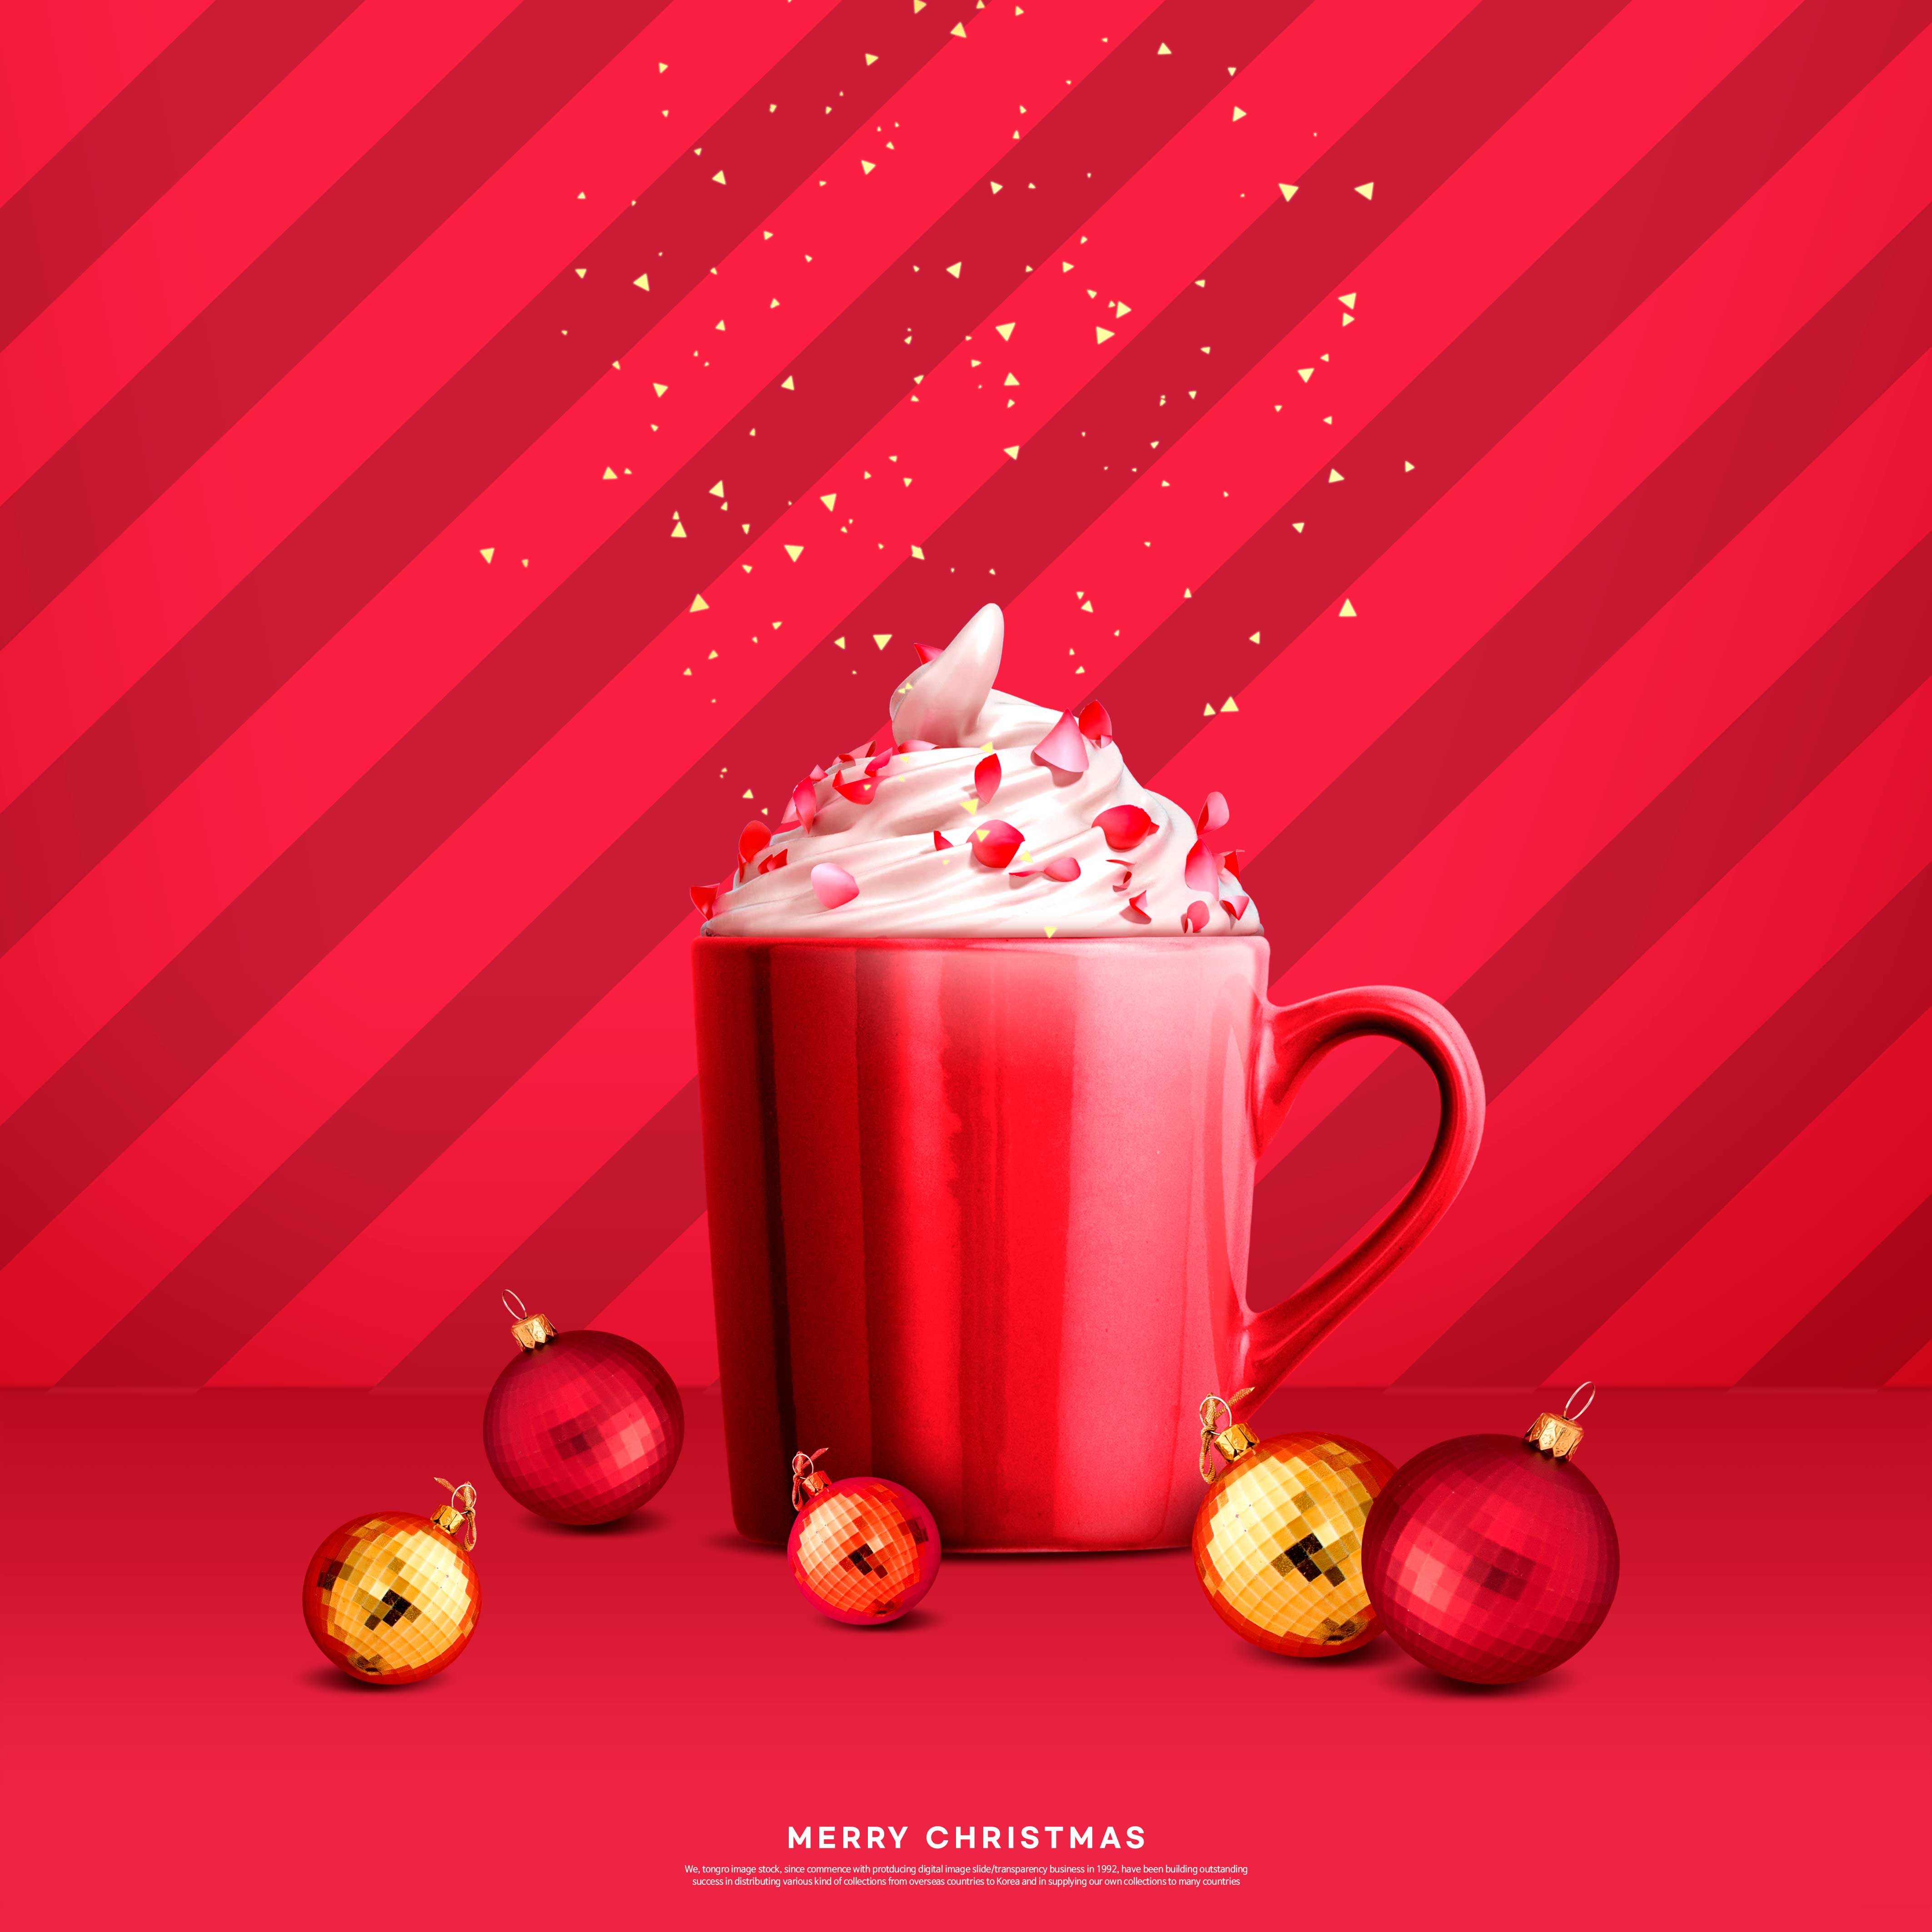 大红圣诞节创意雪糕杯海报设计psd素材设计素材模板